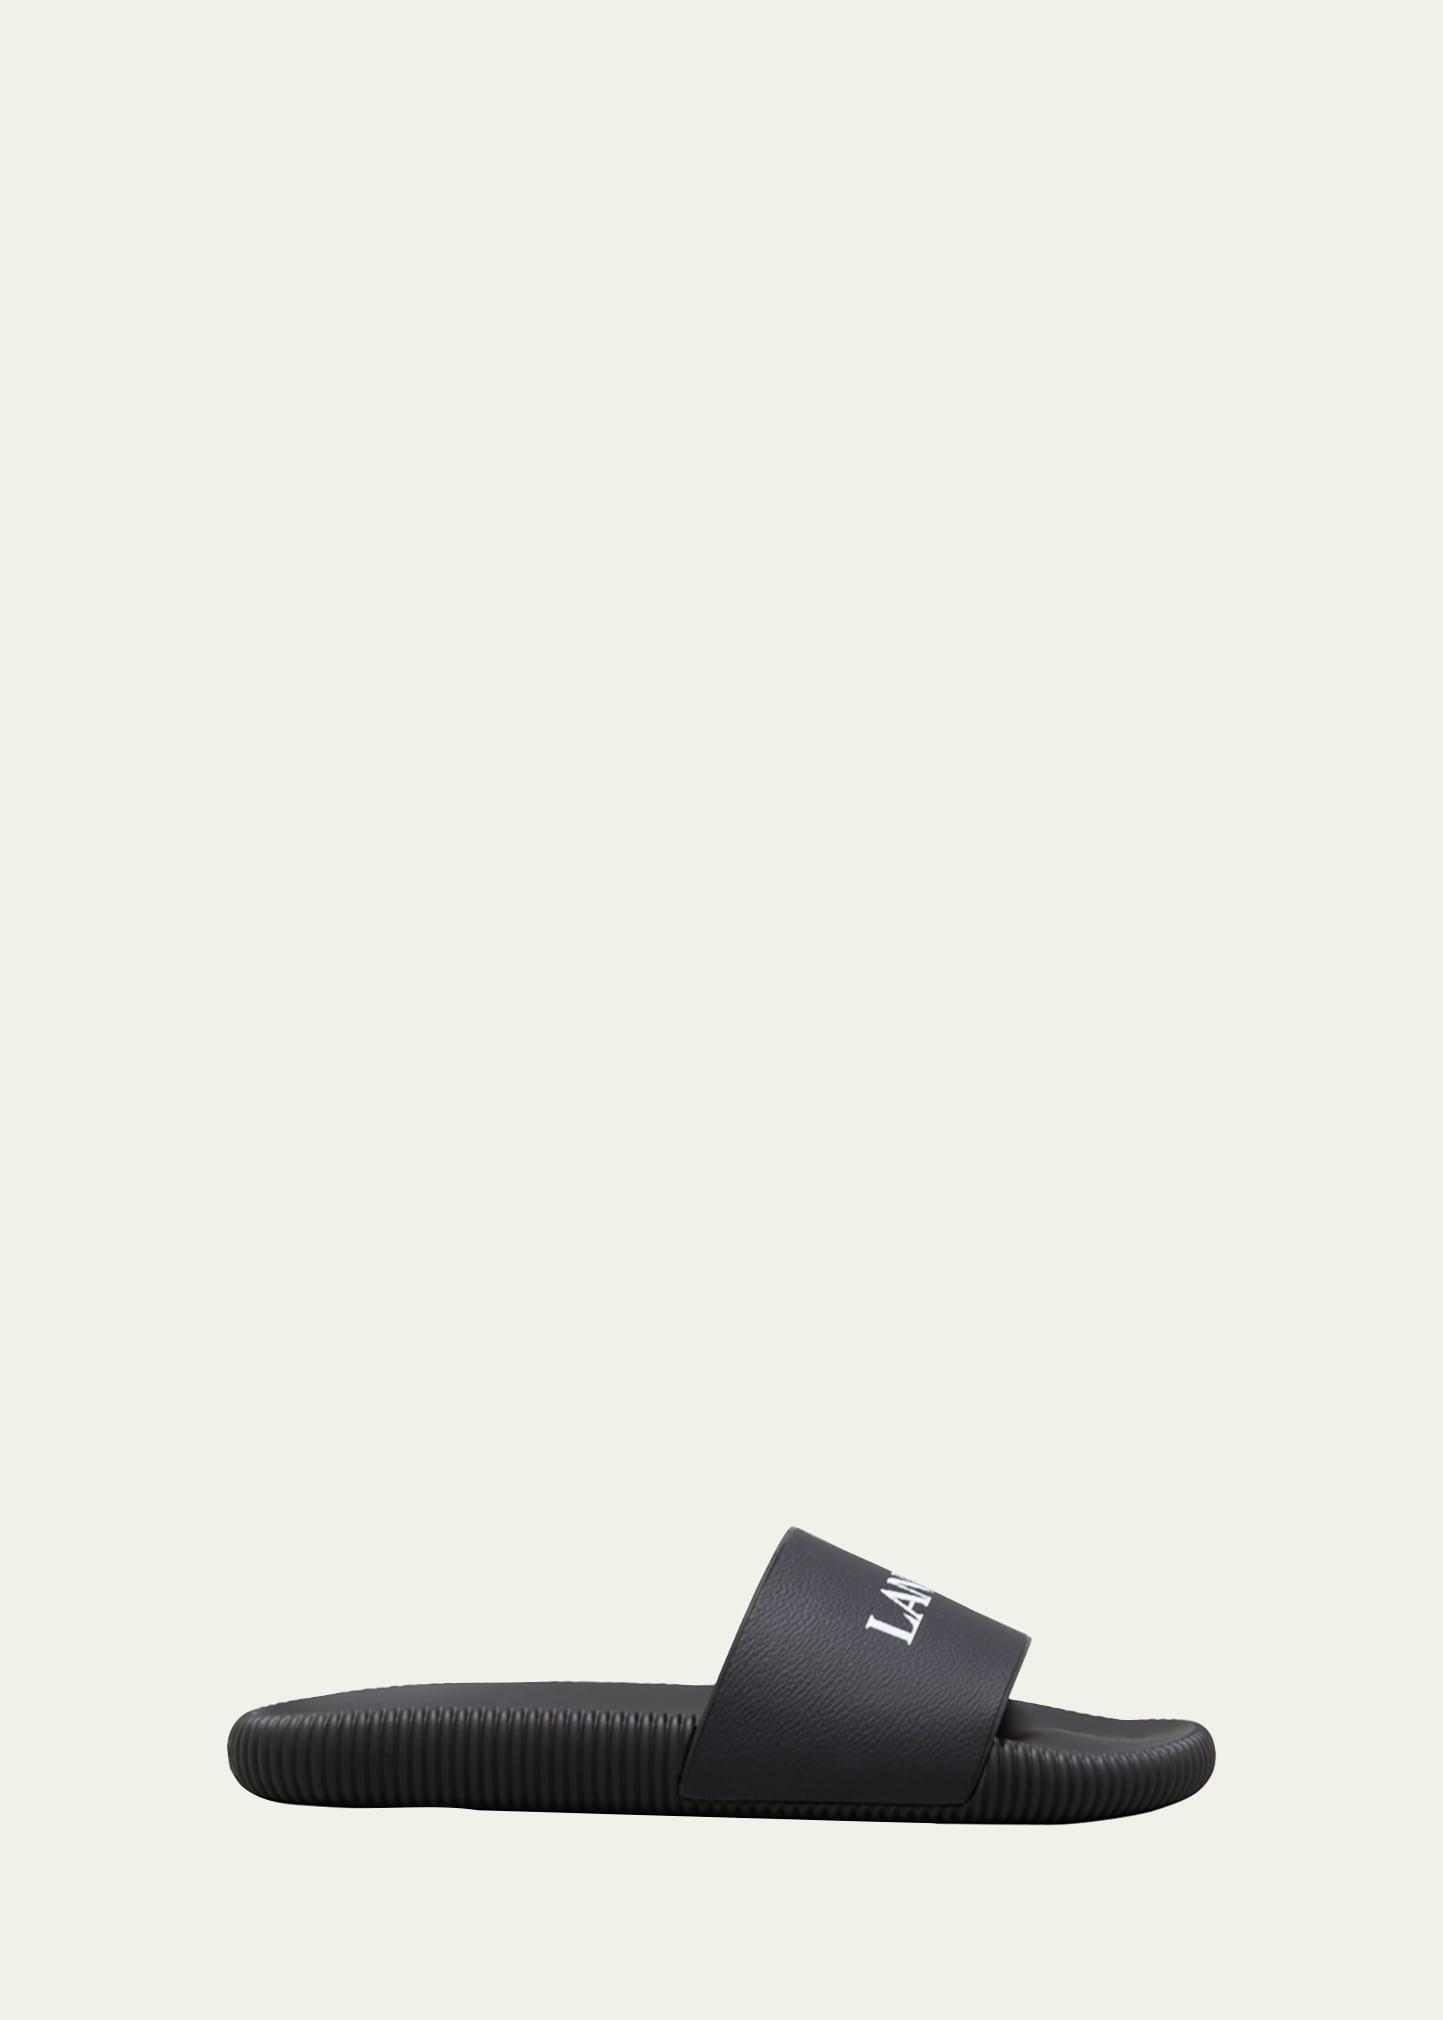 Balenciaga Logo Slide Sandal Product Image